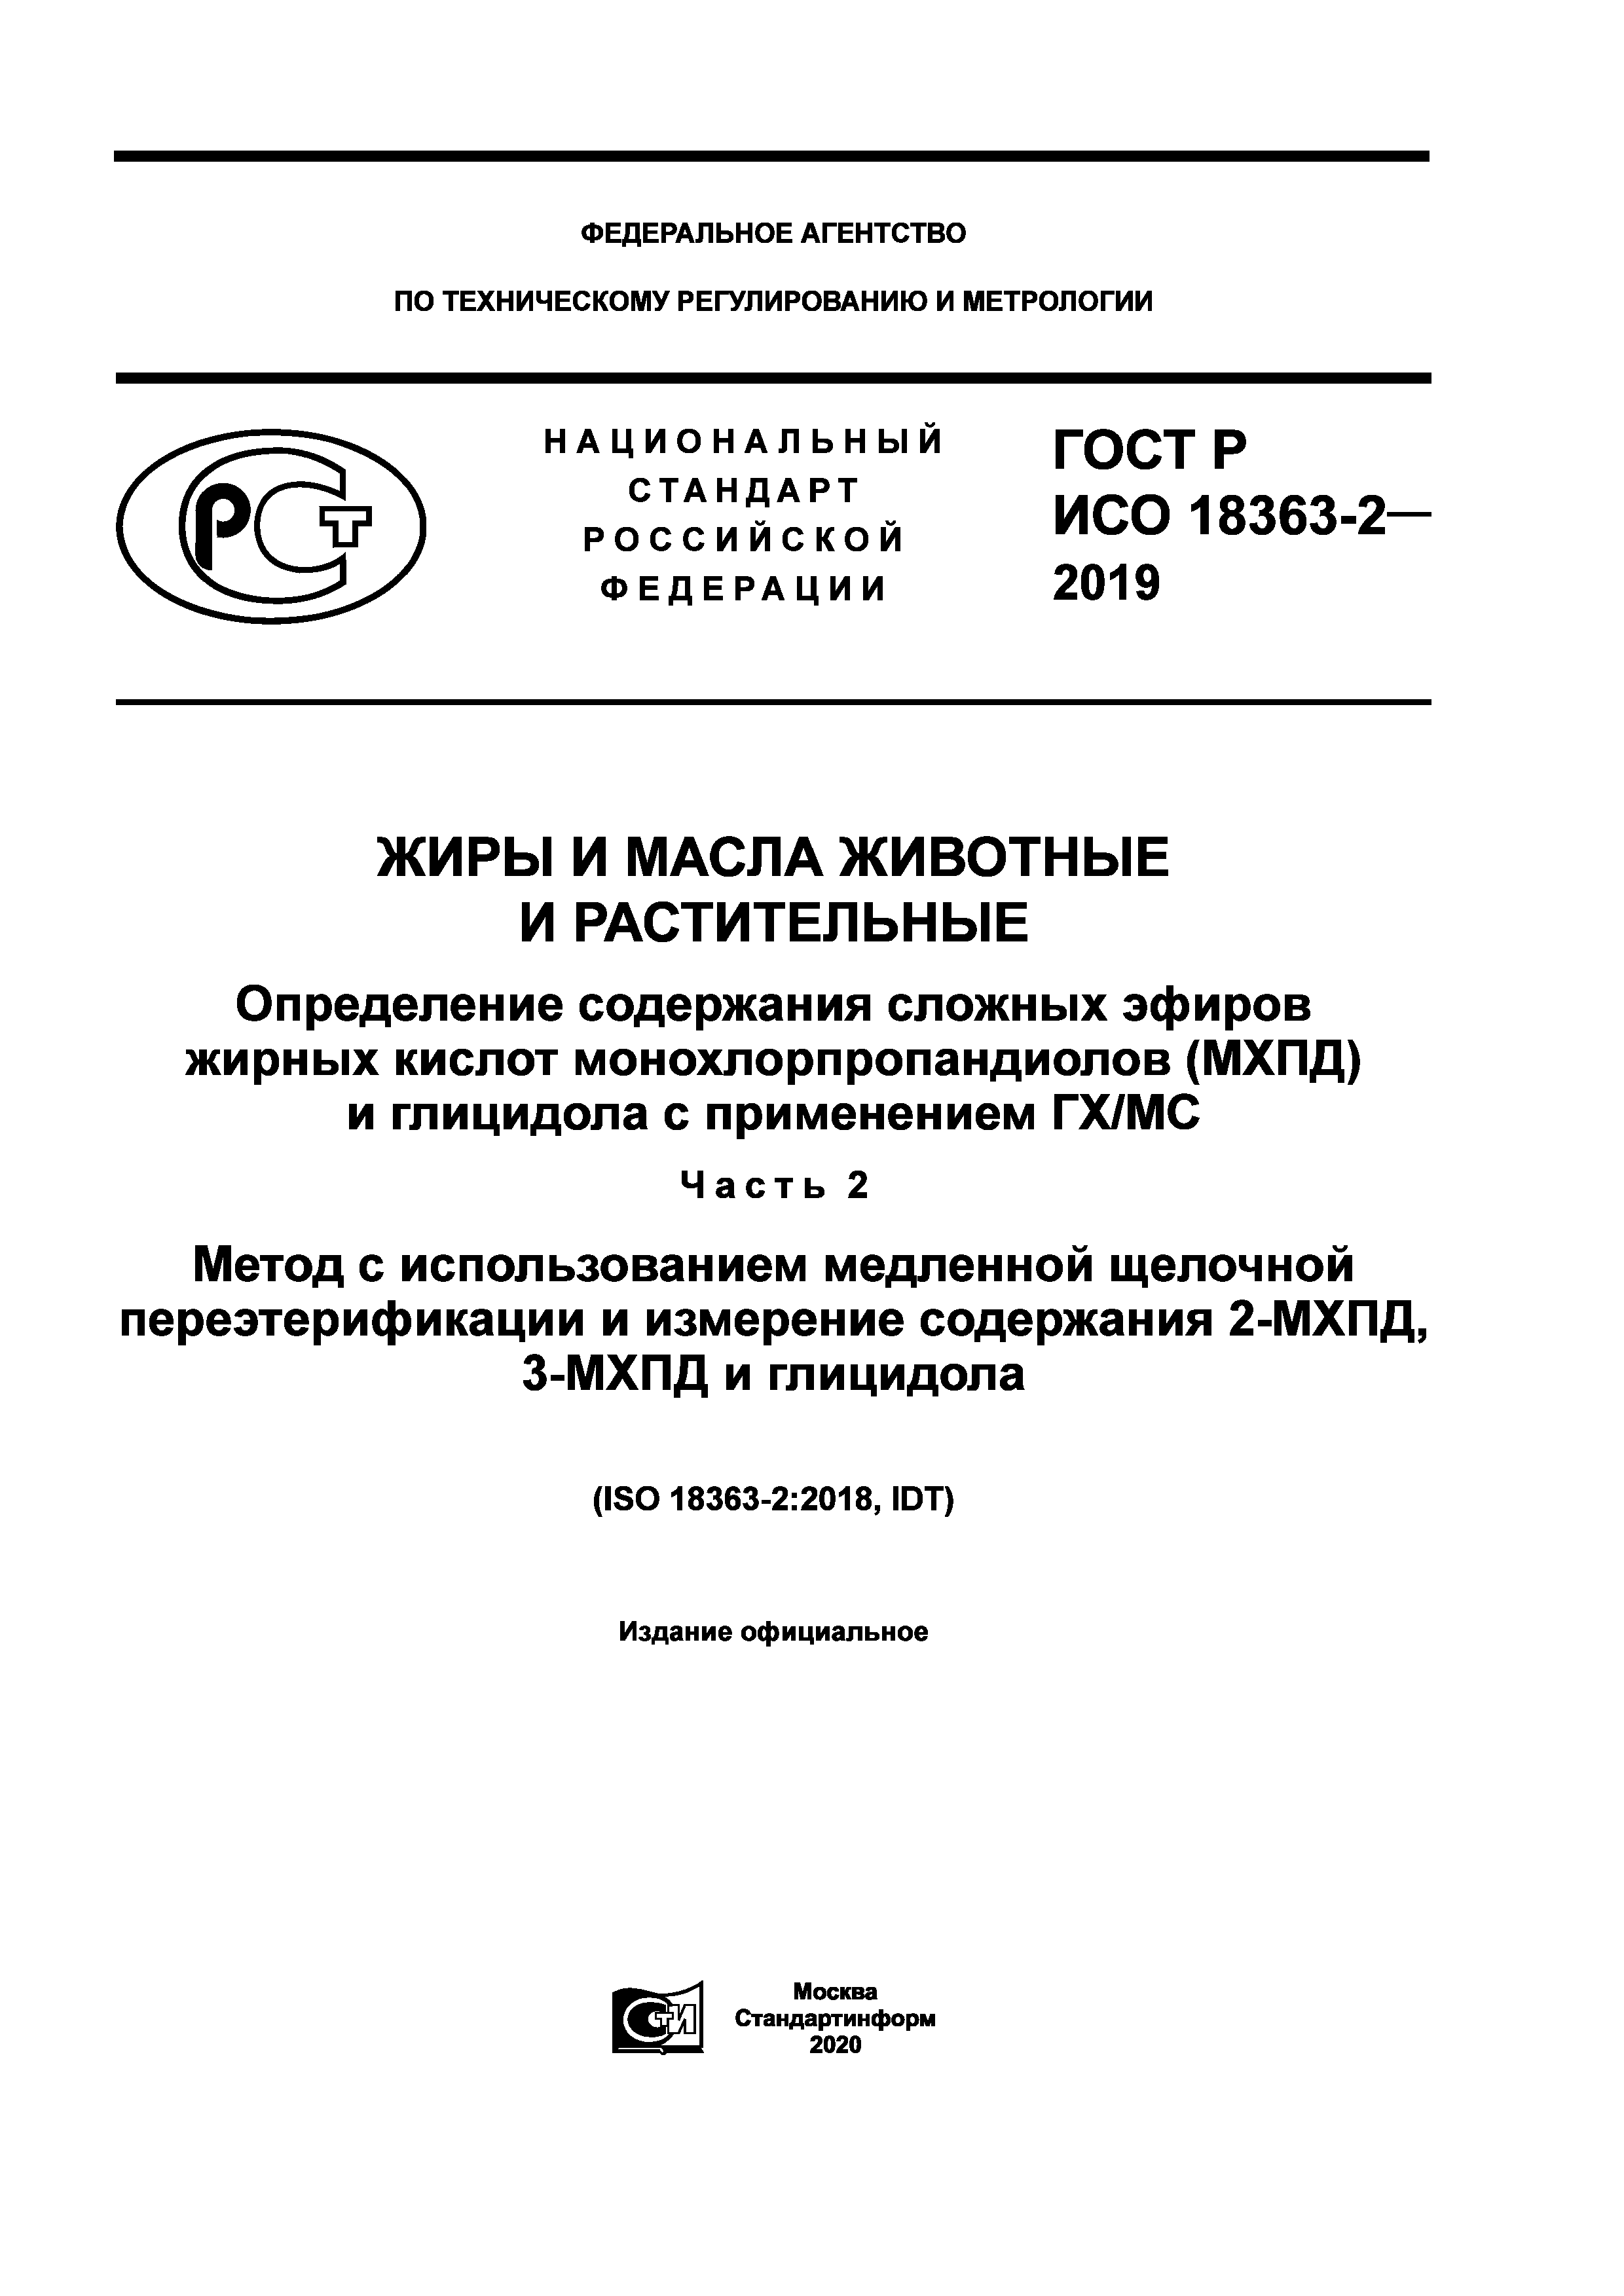 ГОСТ Р ИСО 18363-2-2019